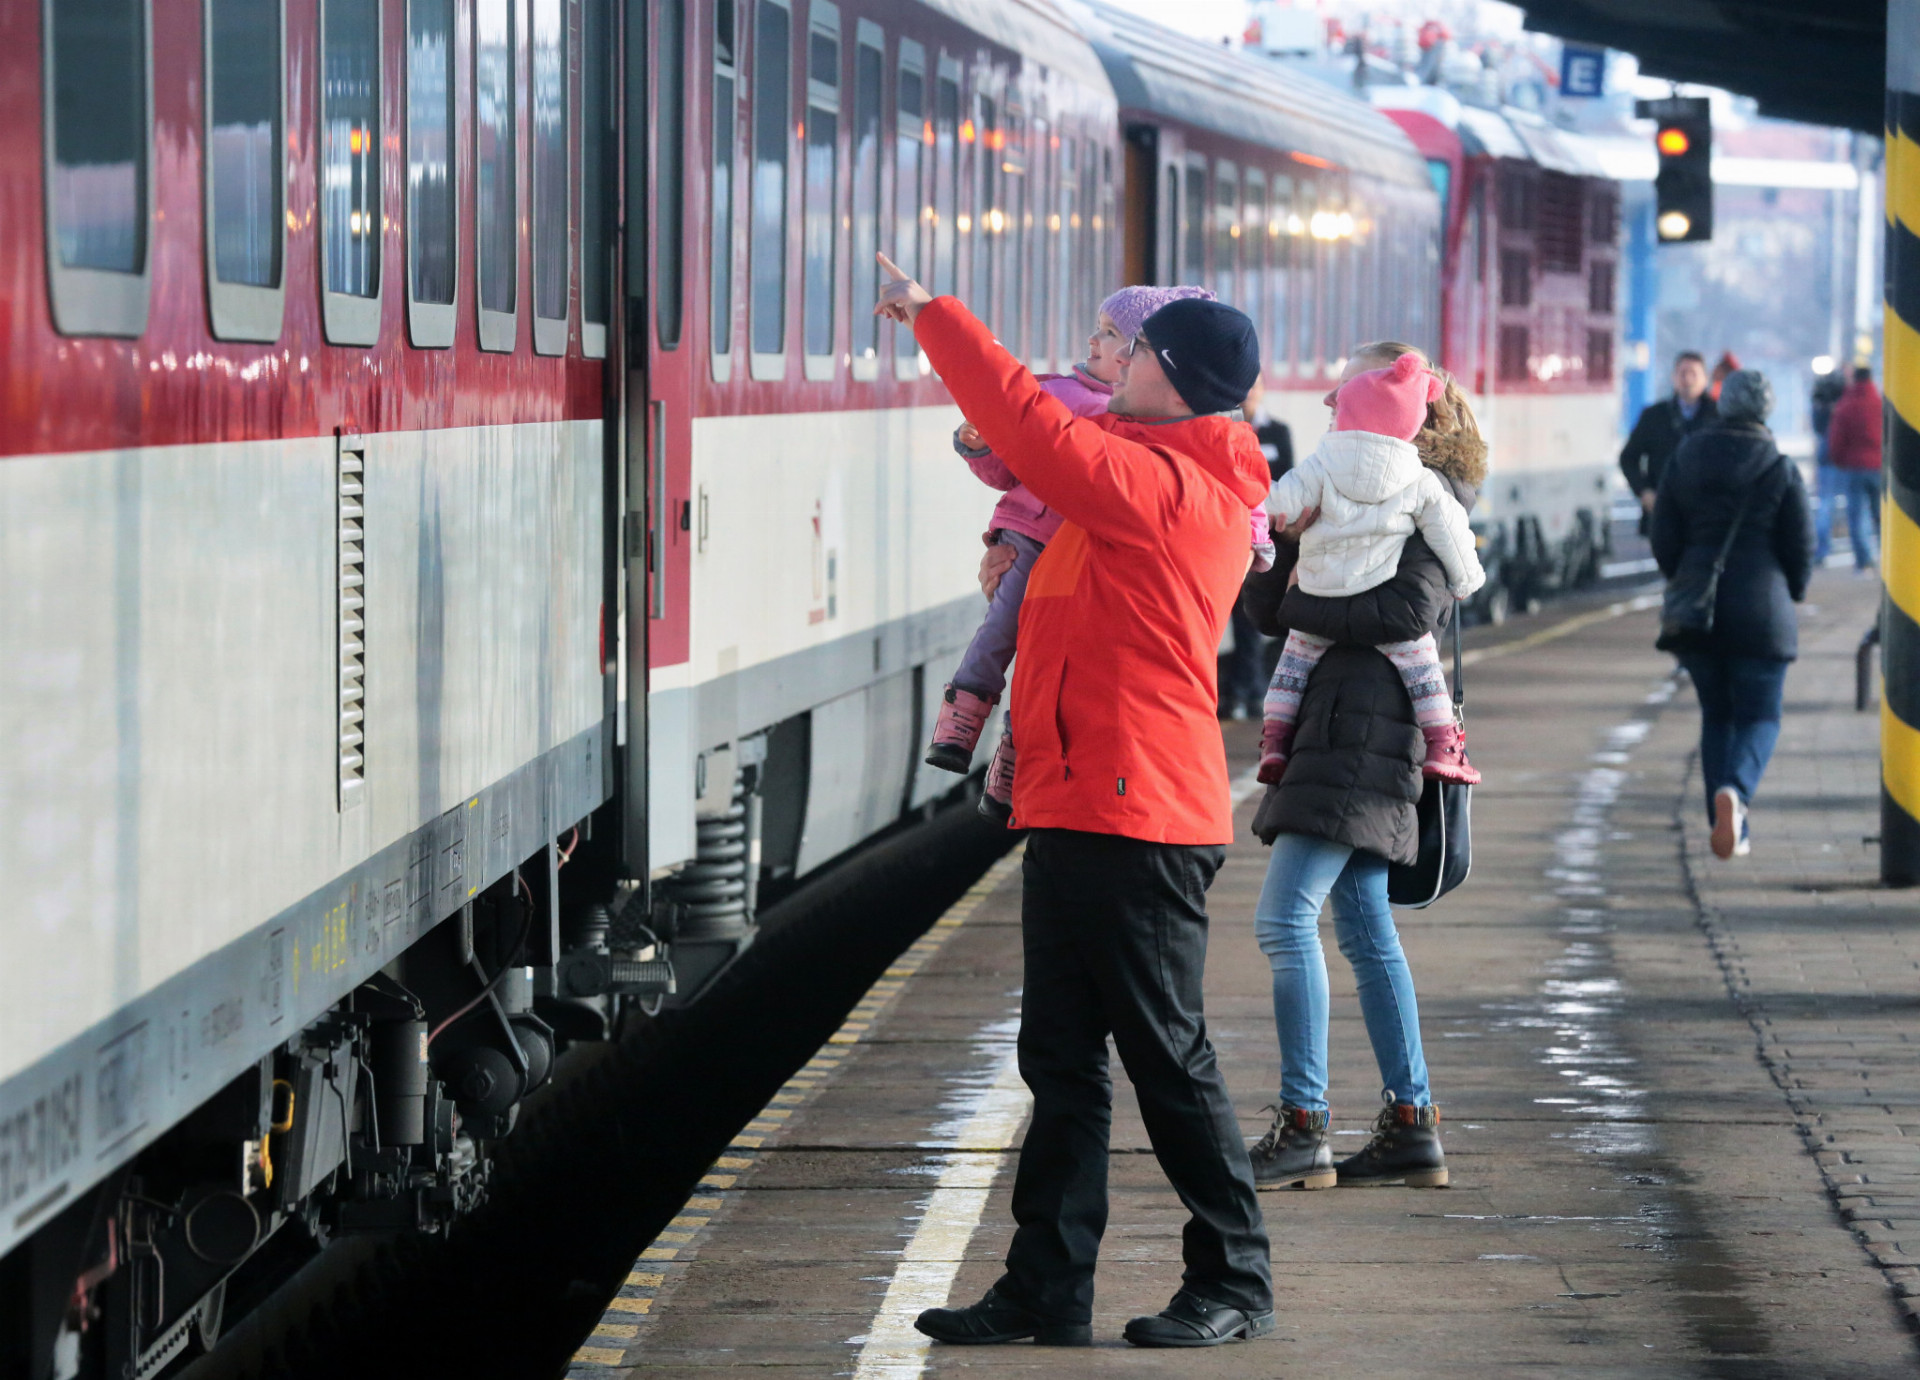 Vlaky InterCity. Programové vyhlásenie vlády hovorilo o „prehodnotení zrušenia vlakov InterCity“. Spoje sa reálne vrátili 16. decembra minulého roka. Zákazníkov lákali na bezkonkurenčnú rýchlosť cesty na najvyťaženejšej trati z Bratislavy do Košíc, avšak na úkor vynechania dôležitých zastávok ako Liptovský Mikuláš či Trenčín. Kvôli "ícéčkam" stiahol súkromný RegioJet svoje vlaky. Nahradili ich pomalšie štátne IC vlaky.
64 percent je aktuálne priemerná obsadenosť nových IC vlakov.
